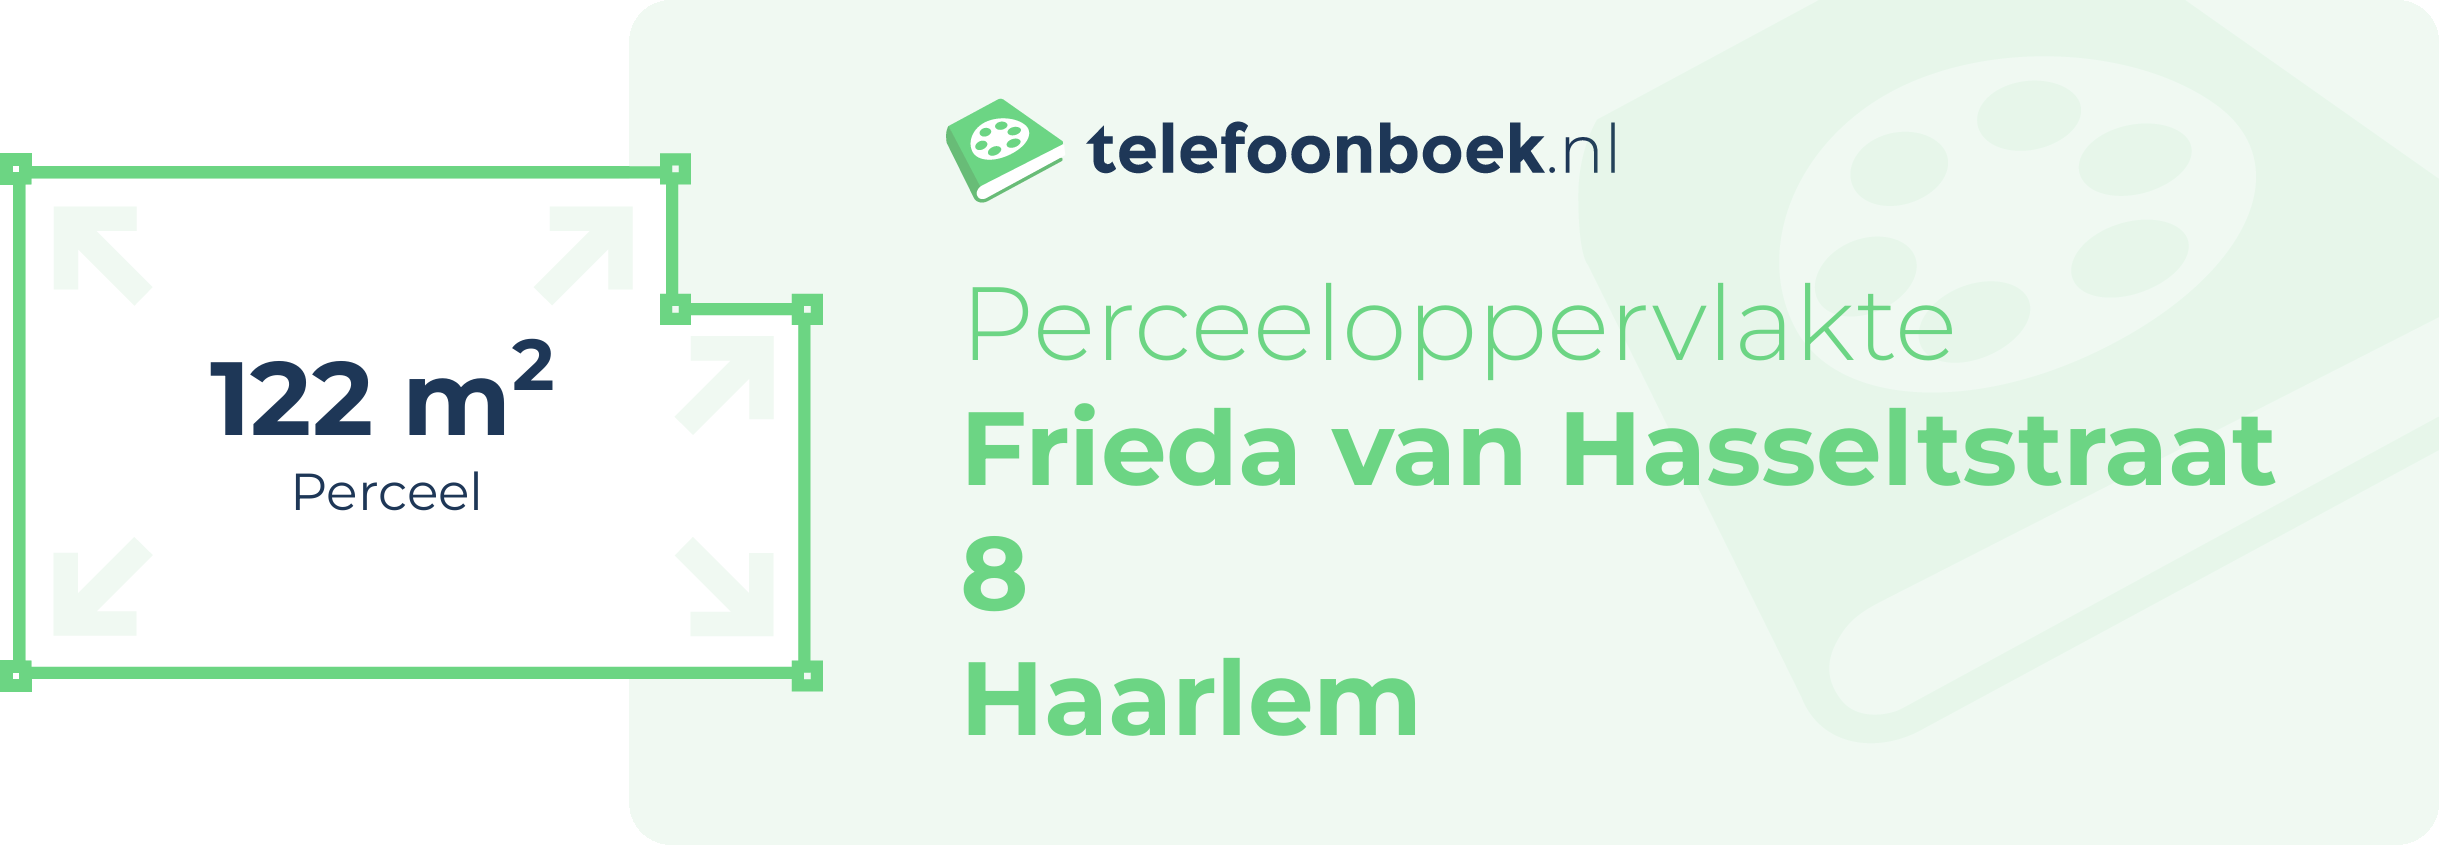 Perceeloppervlakte Frieda Van Hasseltstraat 8 Haarlem